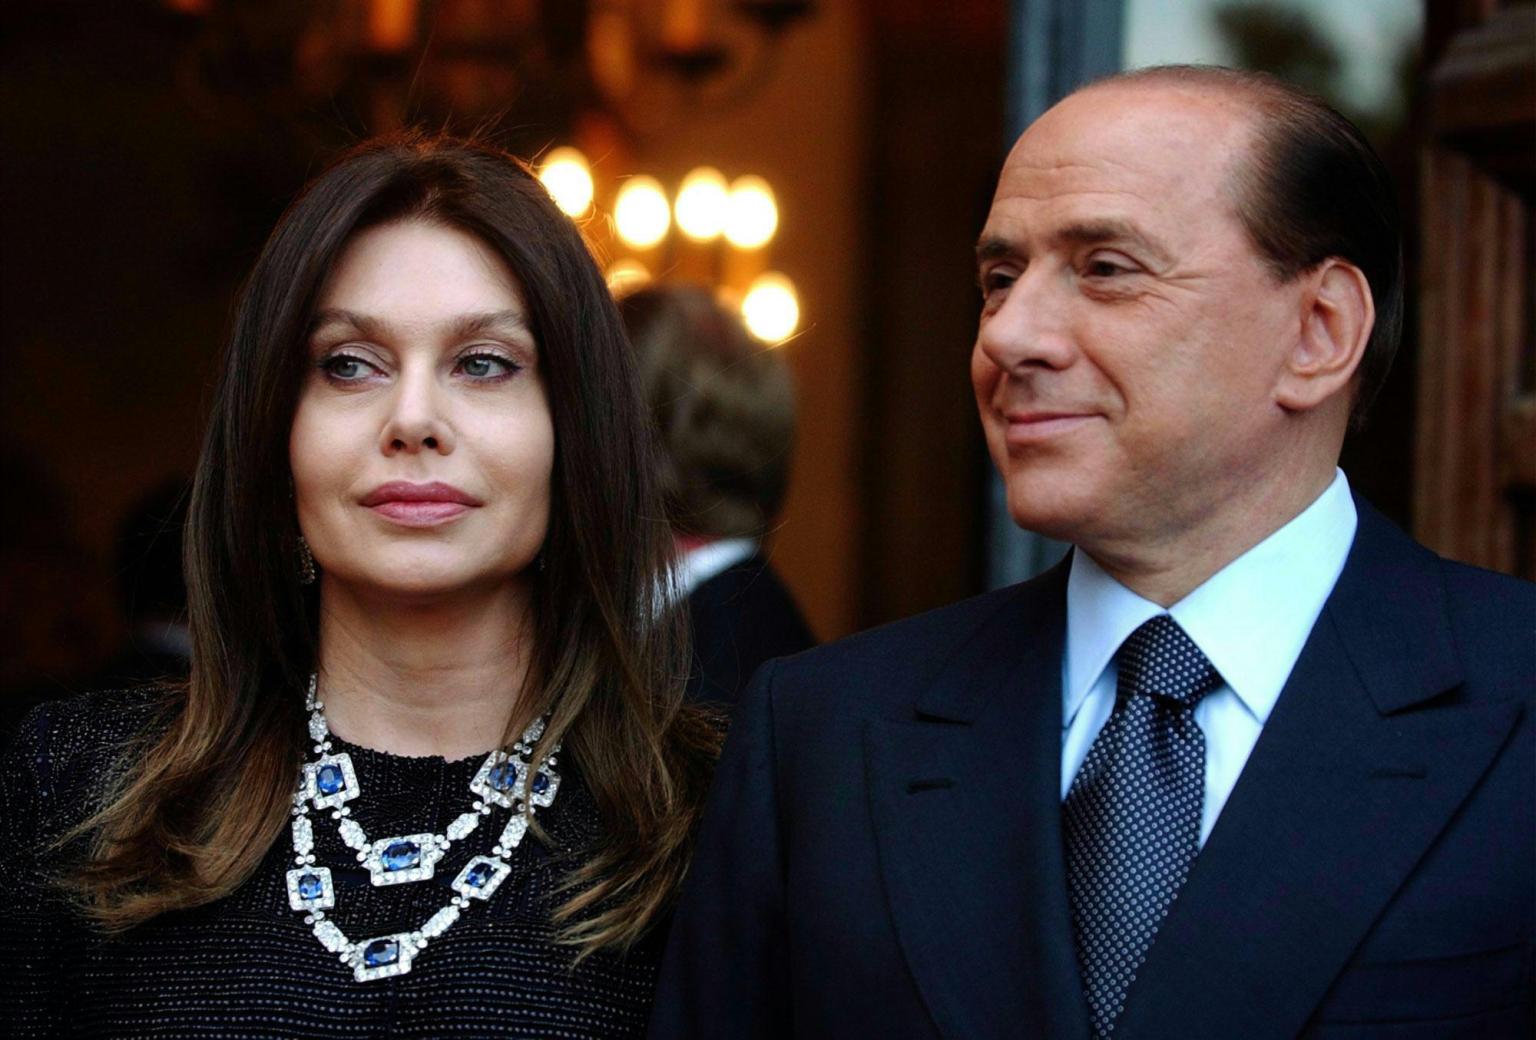 Ιταλία:  Η πρώην σύζυγος του Σ. Μπερλουσκόνι θα προσφύγει σε δικαστήριο γιατί της έκοψαν την διατροφή